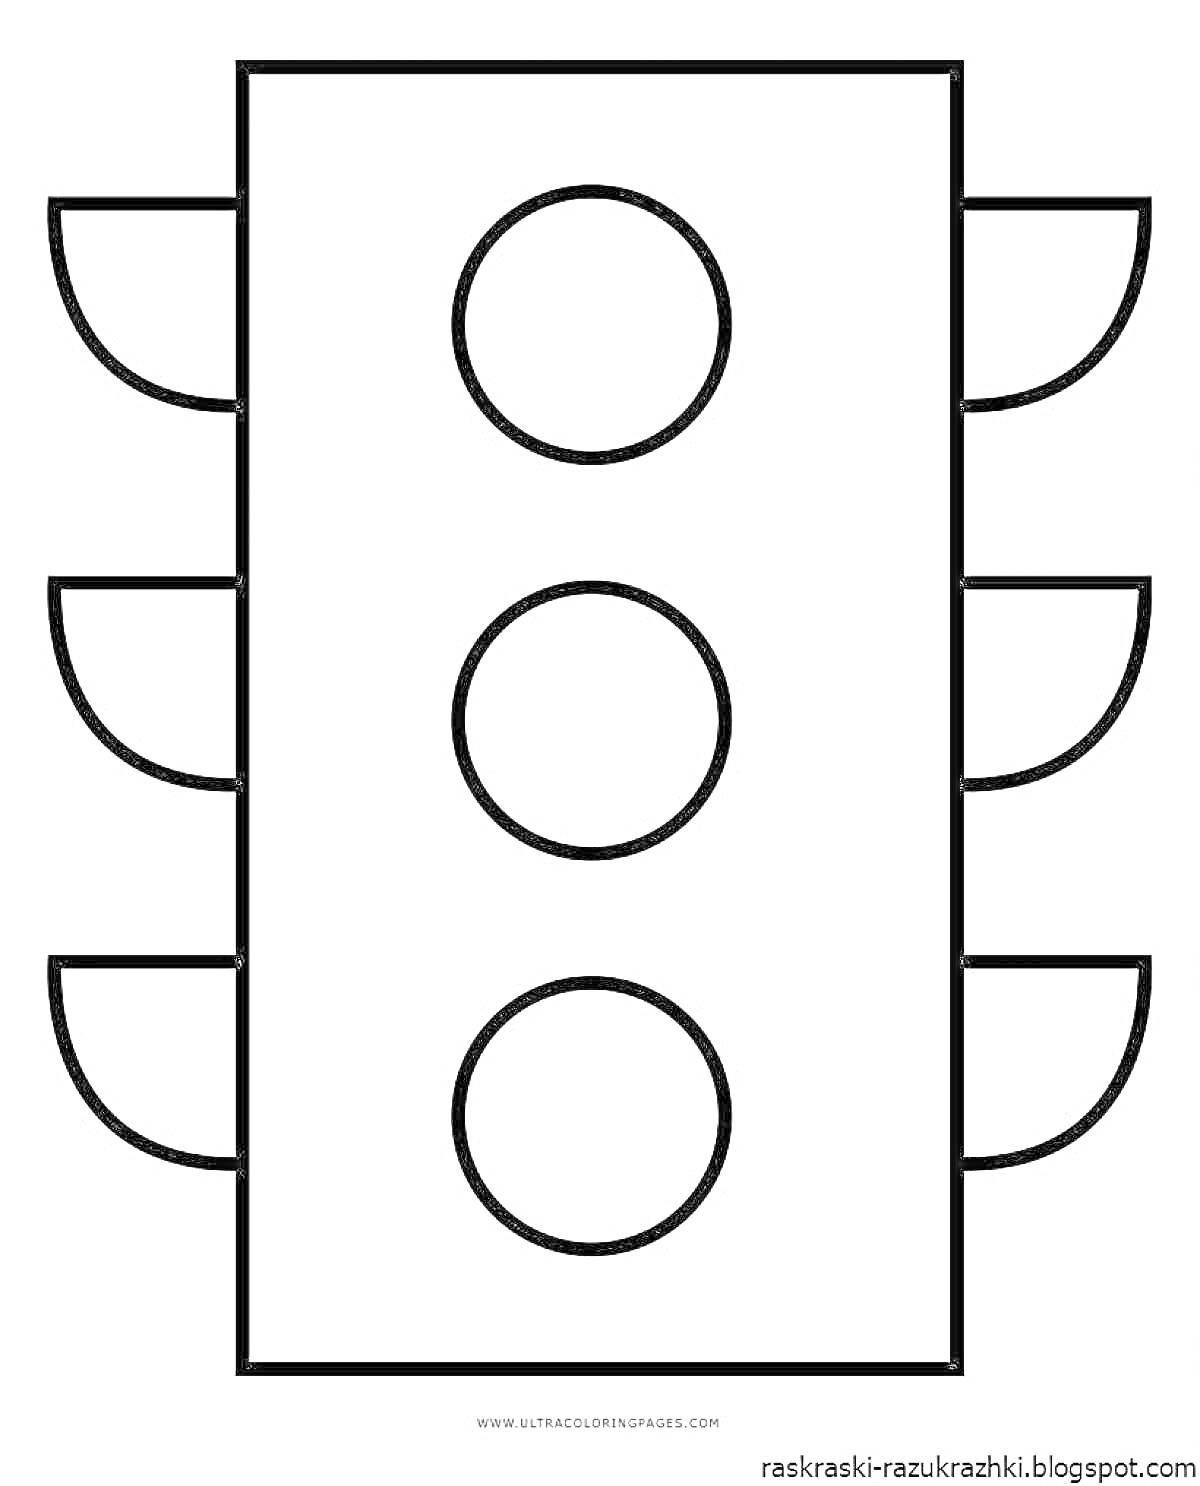 Раскраска светофора с тремя секциями